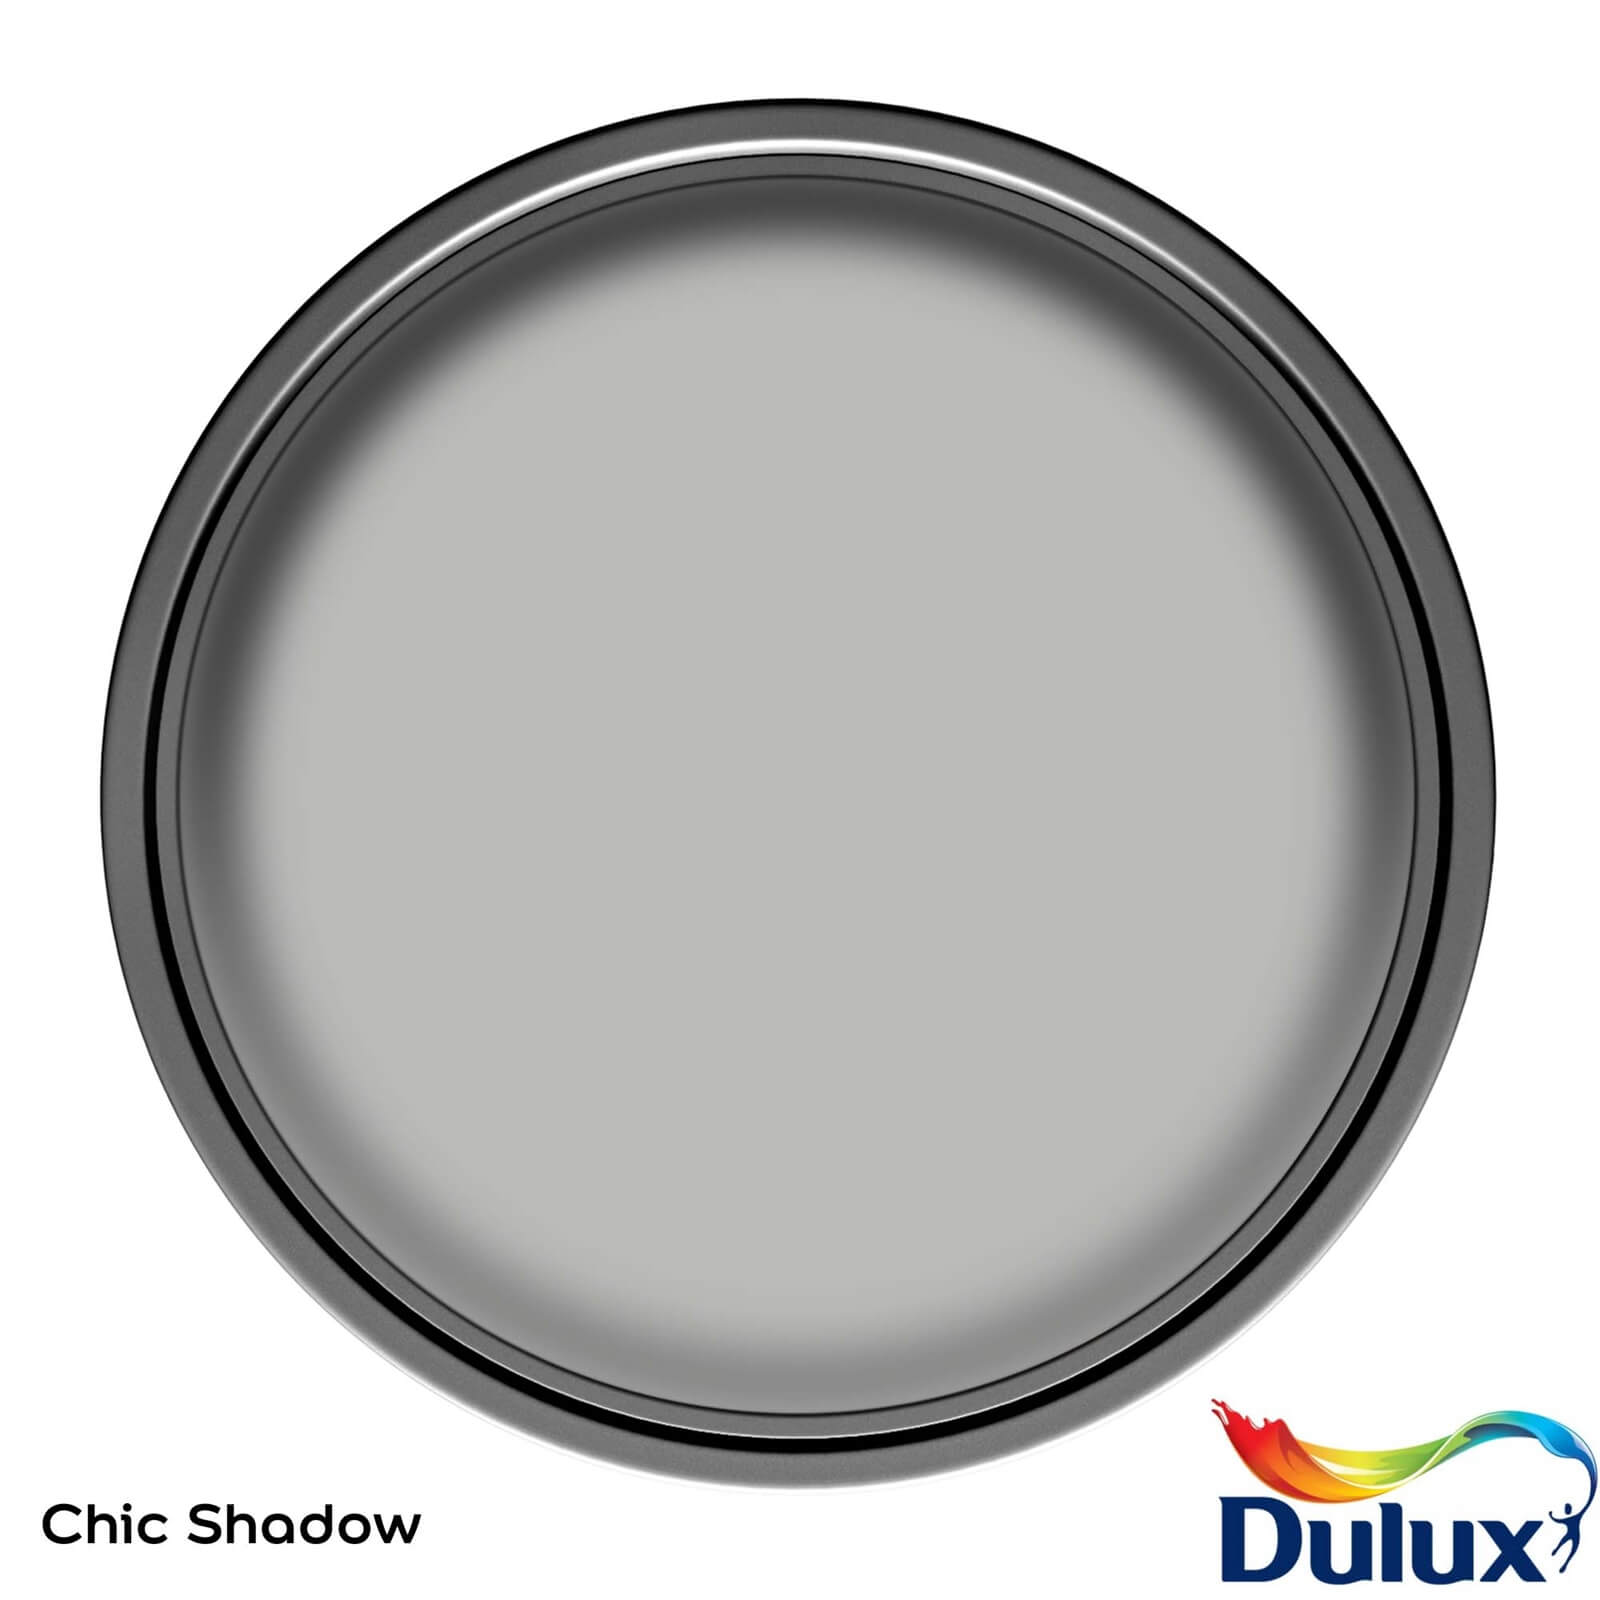 Dulux Easycare Kitchen Matt Emulsion Paint Chic Shadow - 2.5L